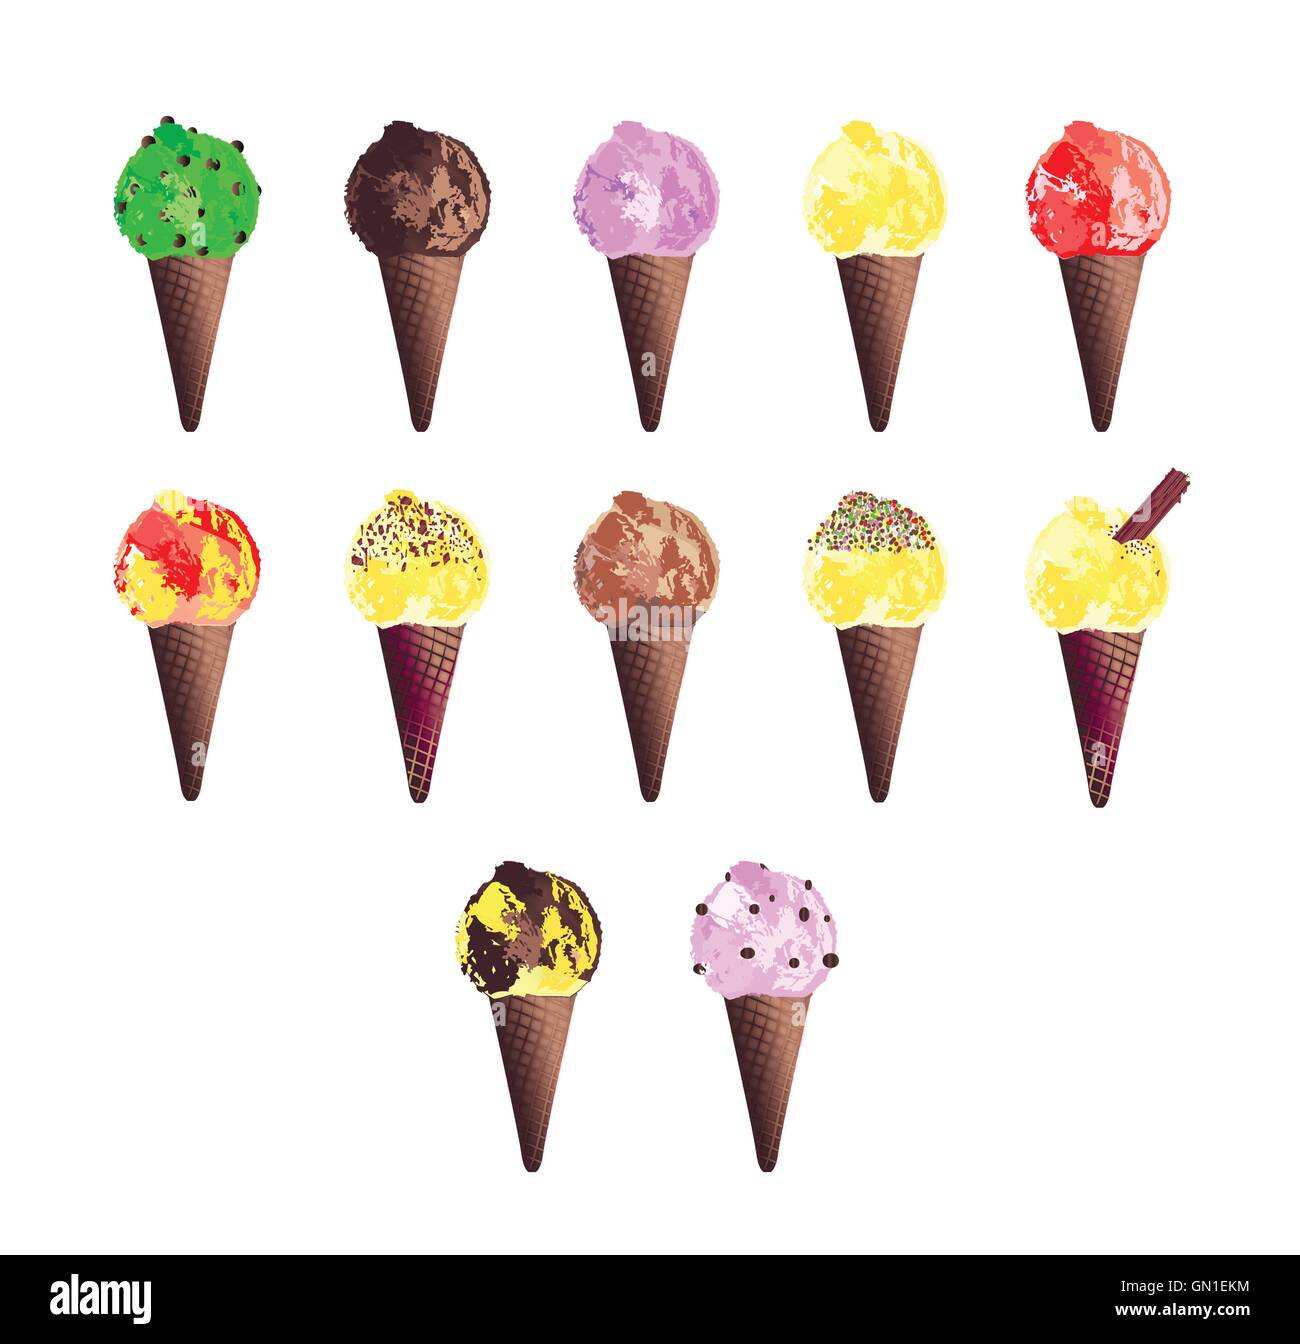 ice-cream-cone-icons-stock-vector-image-art-alamy